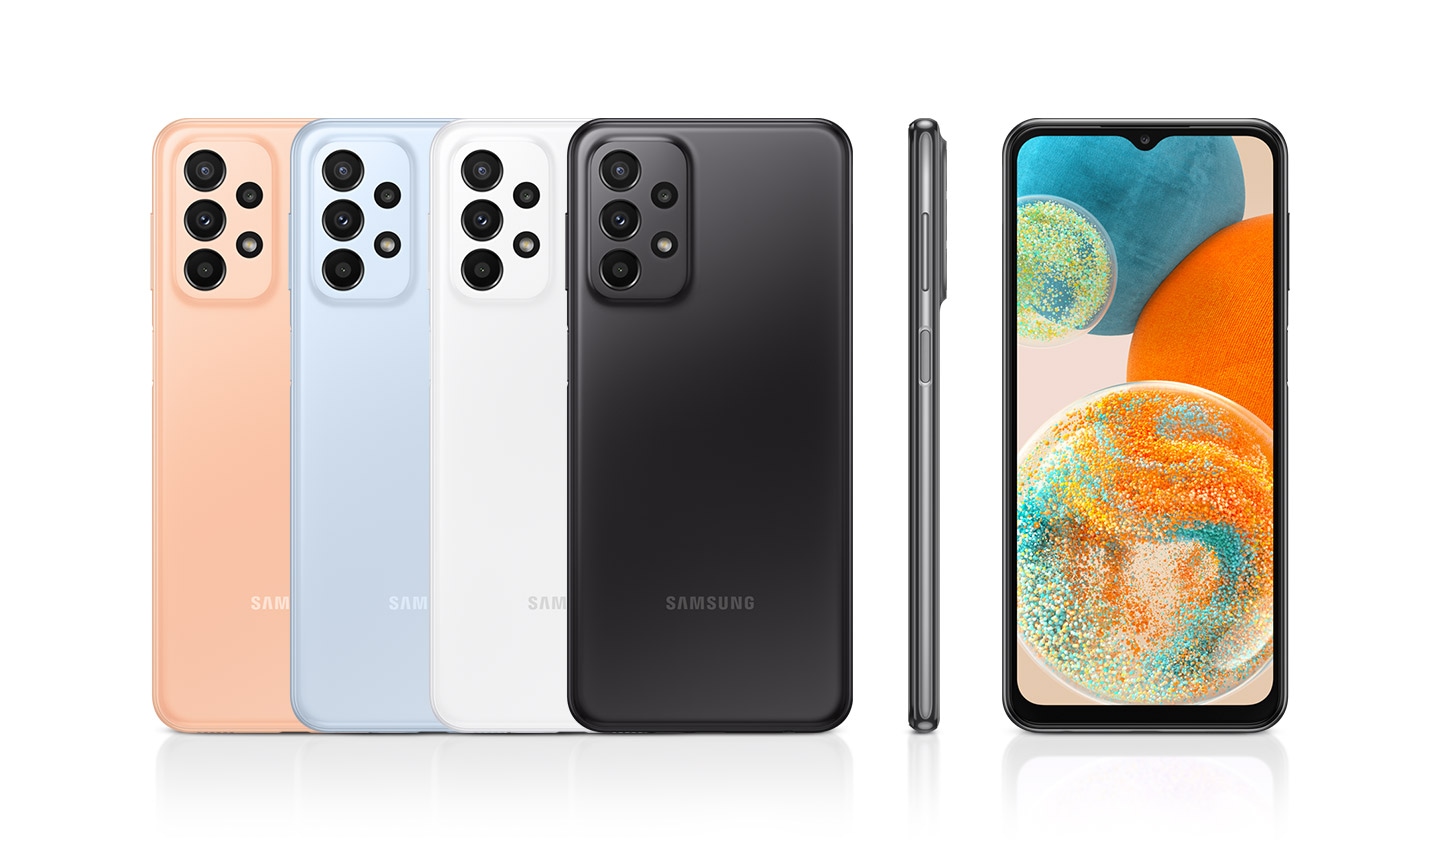 Se muestran seis dispositivos para mostrar sus colores y diseño. Cuatro están invertidos y son de color Naranja, Azul claro, Blanco y Negro, mientras que uno muestra la parte delantera y otro la derecha del dispositivo.